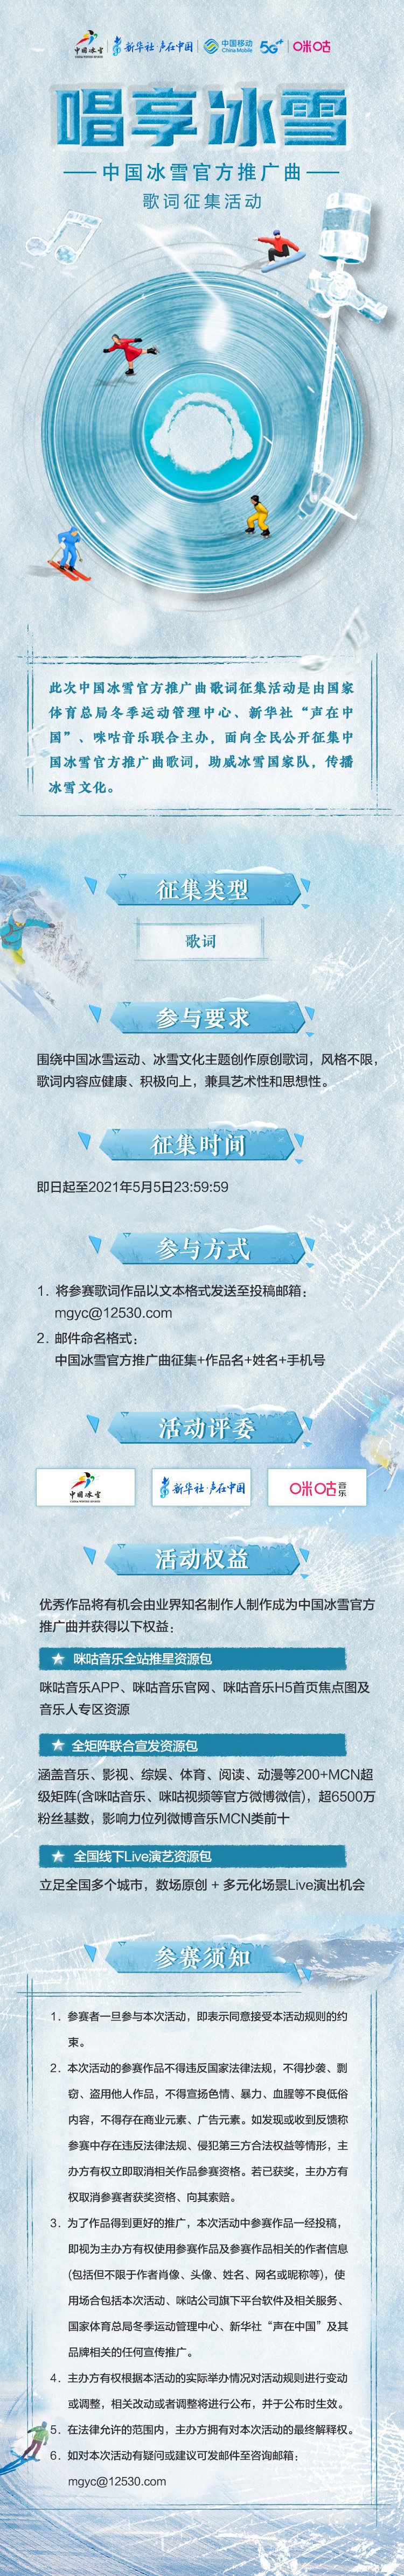 中国冰雪推广曲破冰首发！系列征集活动启动！